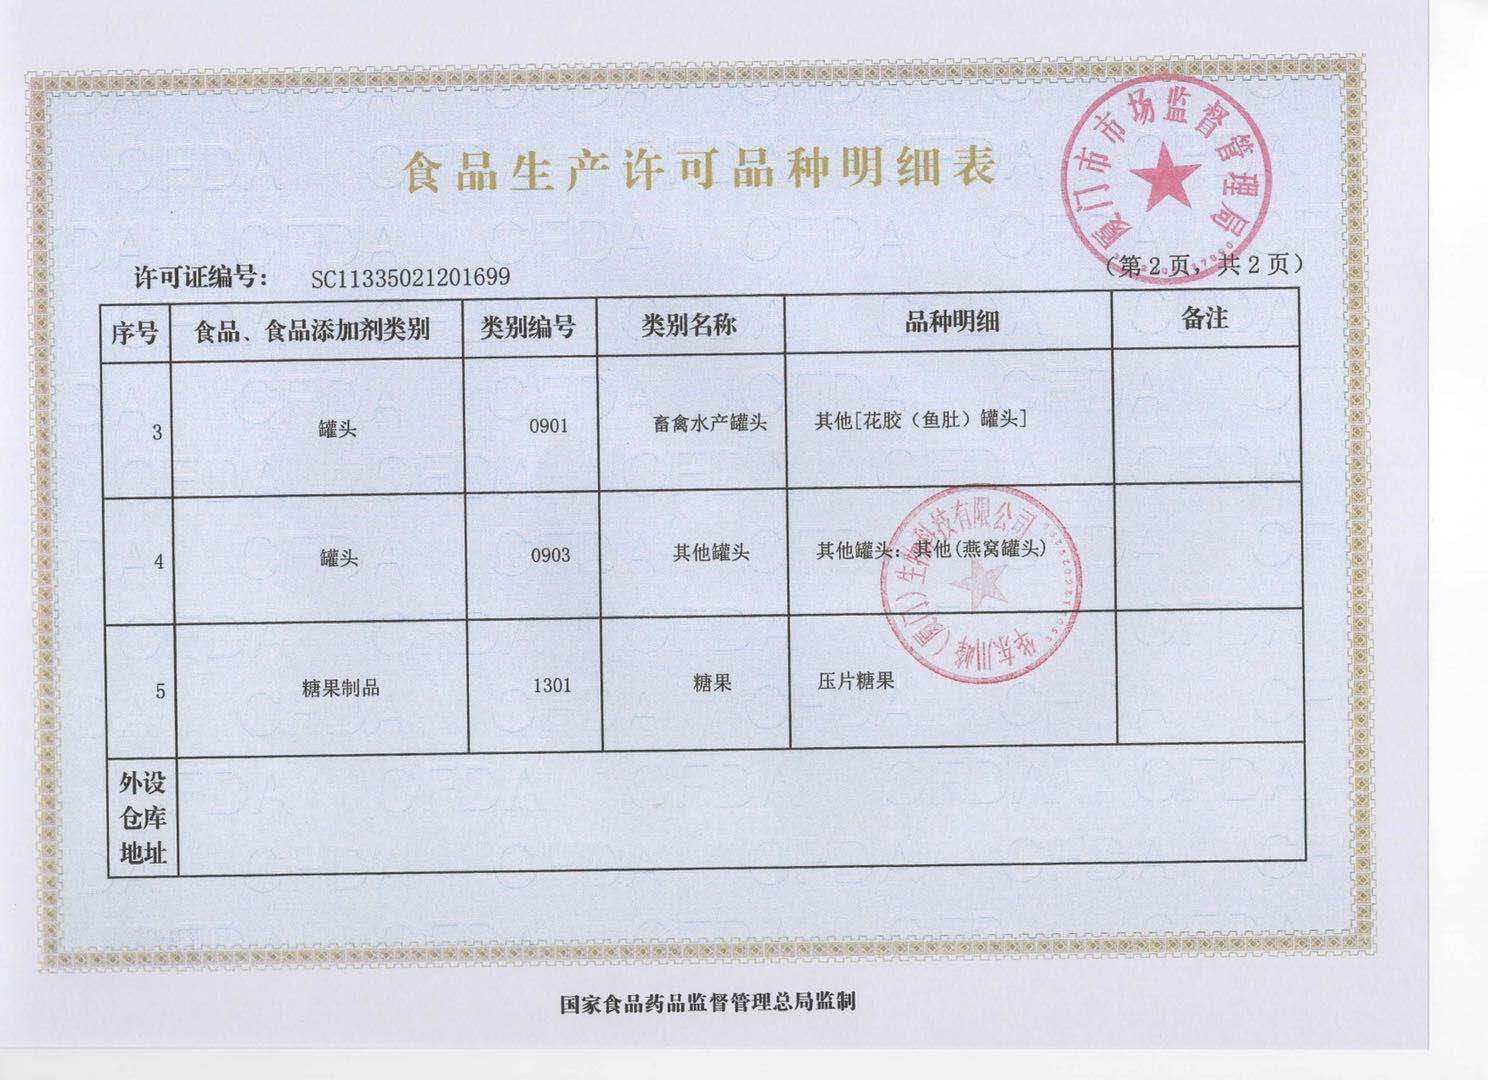 中国食品生产许可品种明细表